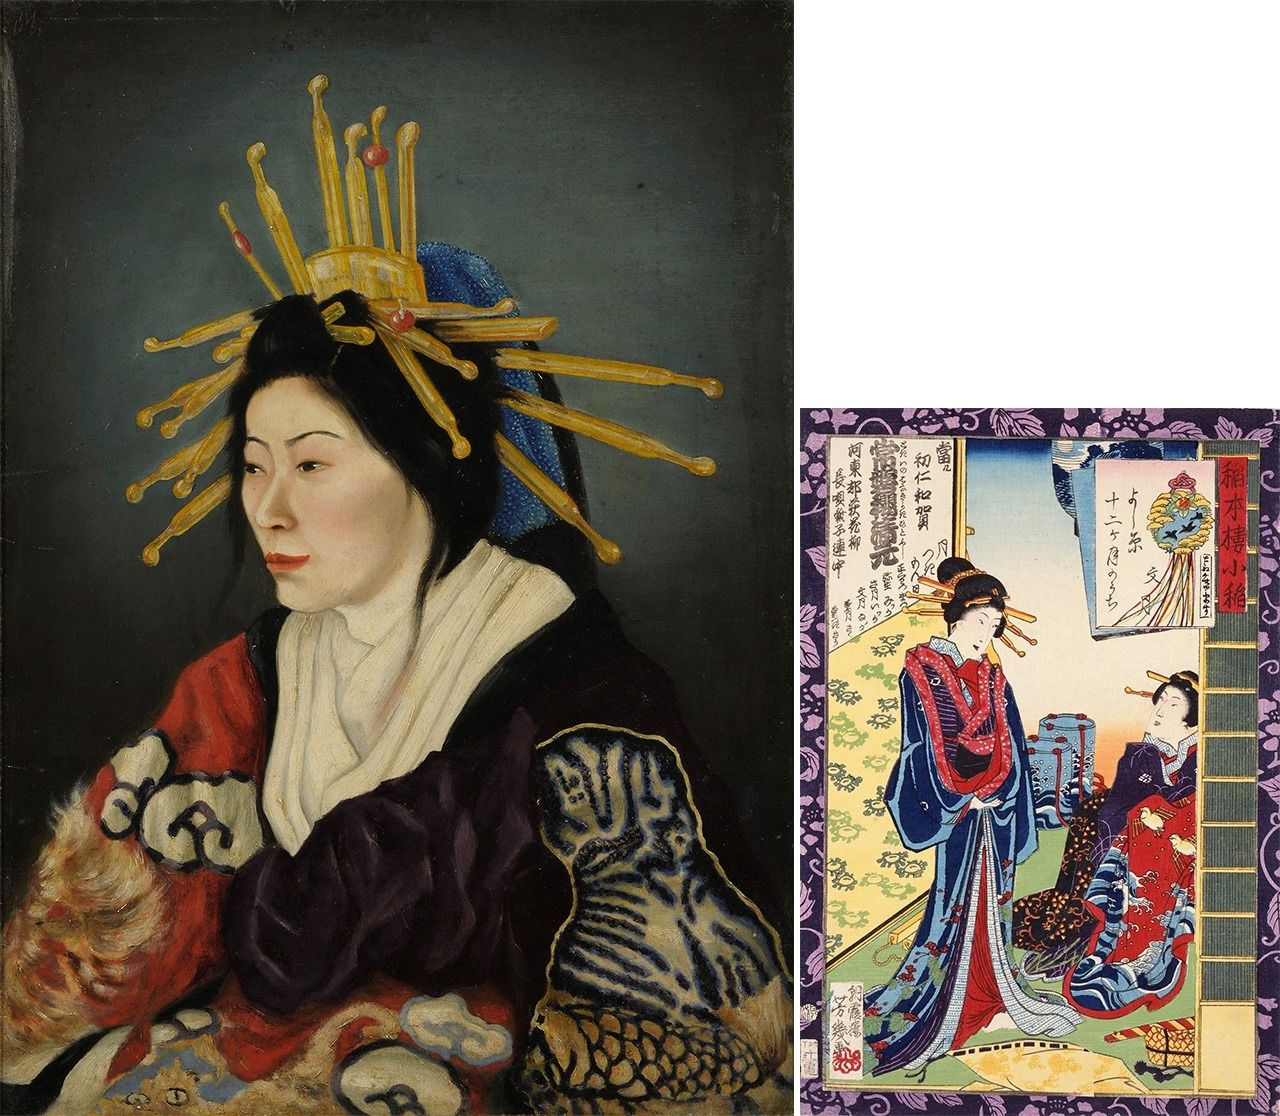 على اليسار، لوحة للفنان تاكاهاشي يويتشي بعنوان ”أويران (المحظية الكبرى)“ لعام 1872، (بإذن من جامعة طوكيو للفنون)؛ ومطبوعة أوكييو-إي على اليمين لأوتشيأي يوشييكو التي تصور نفس المرأة، ويعود تاريخها إلى ثلاث سنوات سابقة فقط (بإذن من متحف هاغي أوراغامي، محافظة ياماغوتشي).